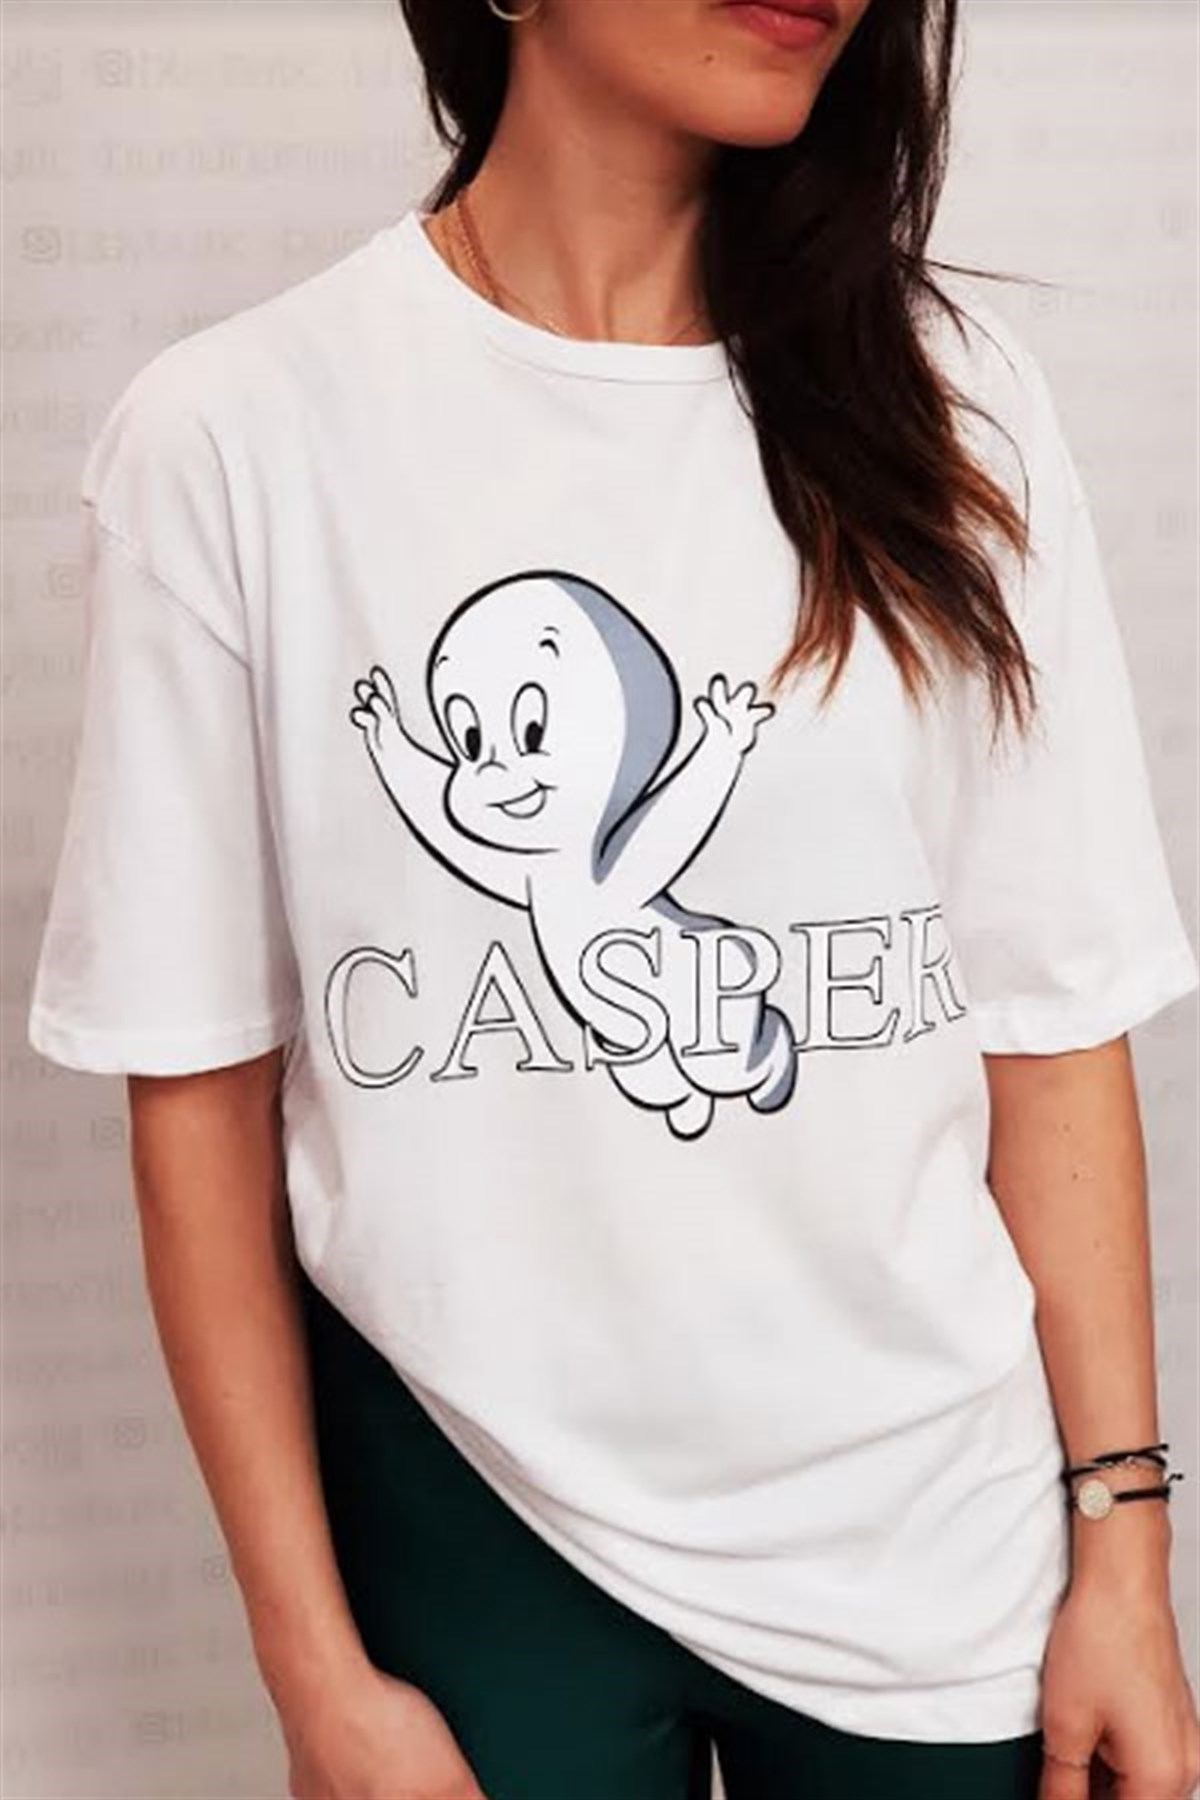 Casper Tshirt